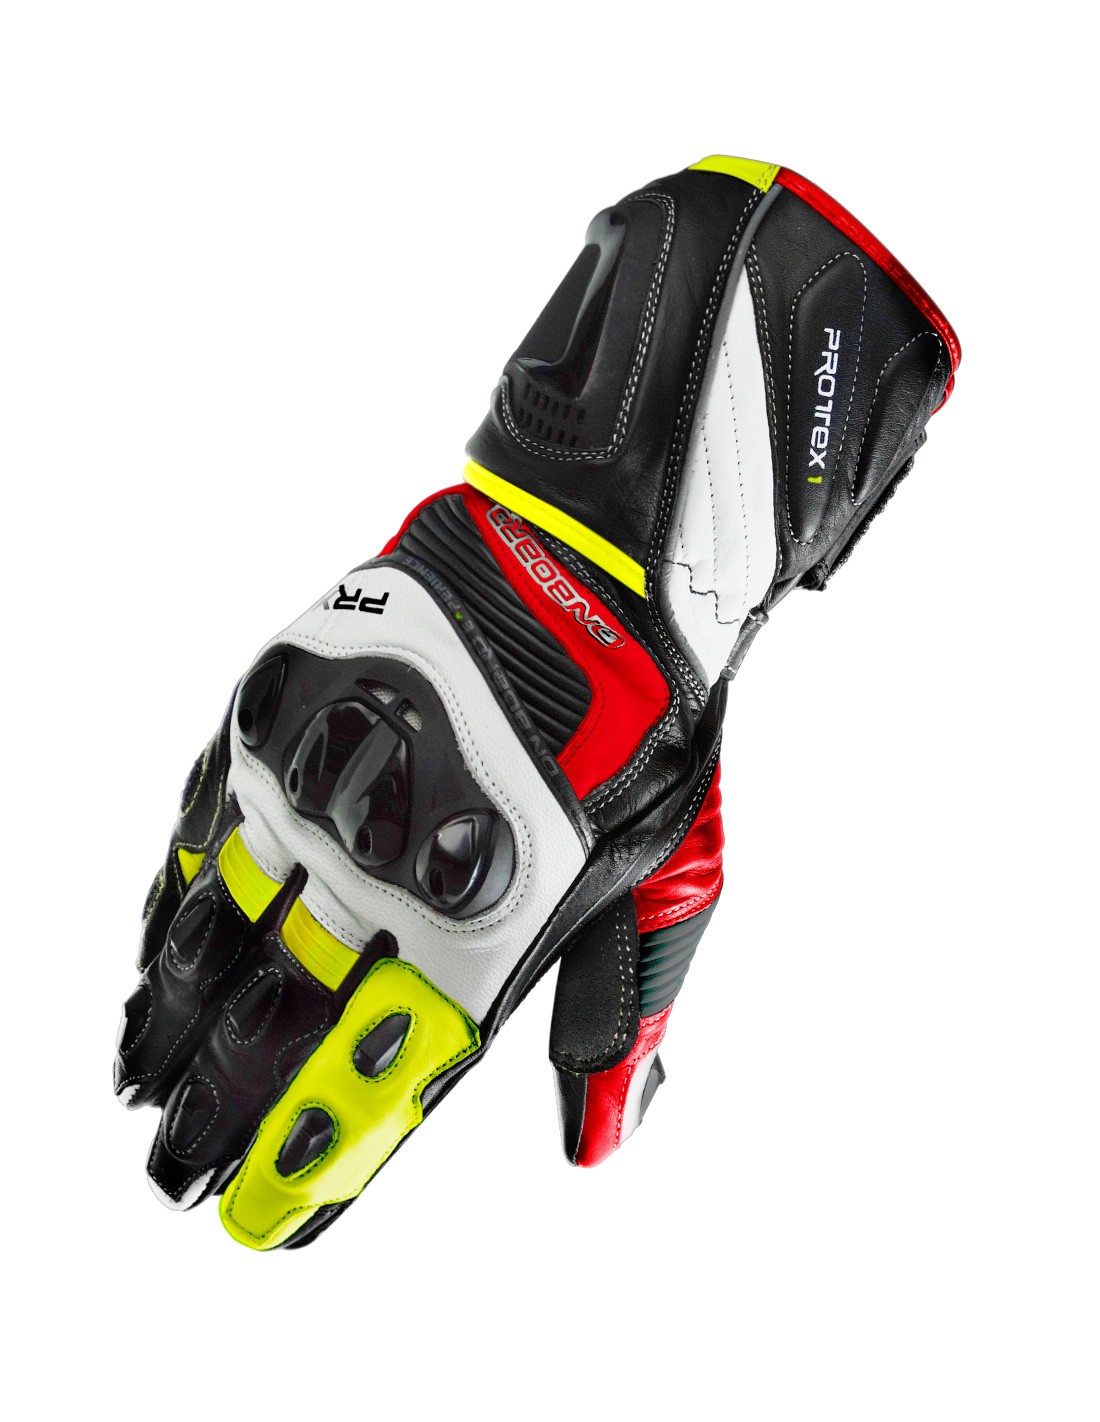 Excelentes y testados guantes homologados On PRX1 negro , rojo y fluor